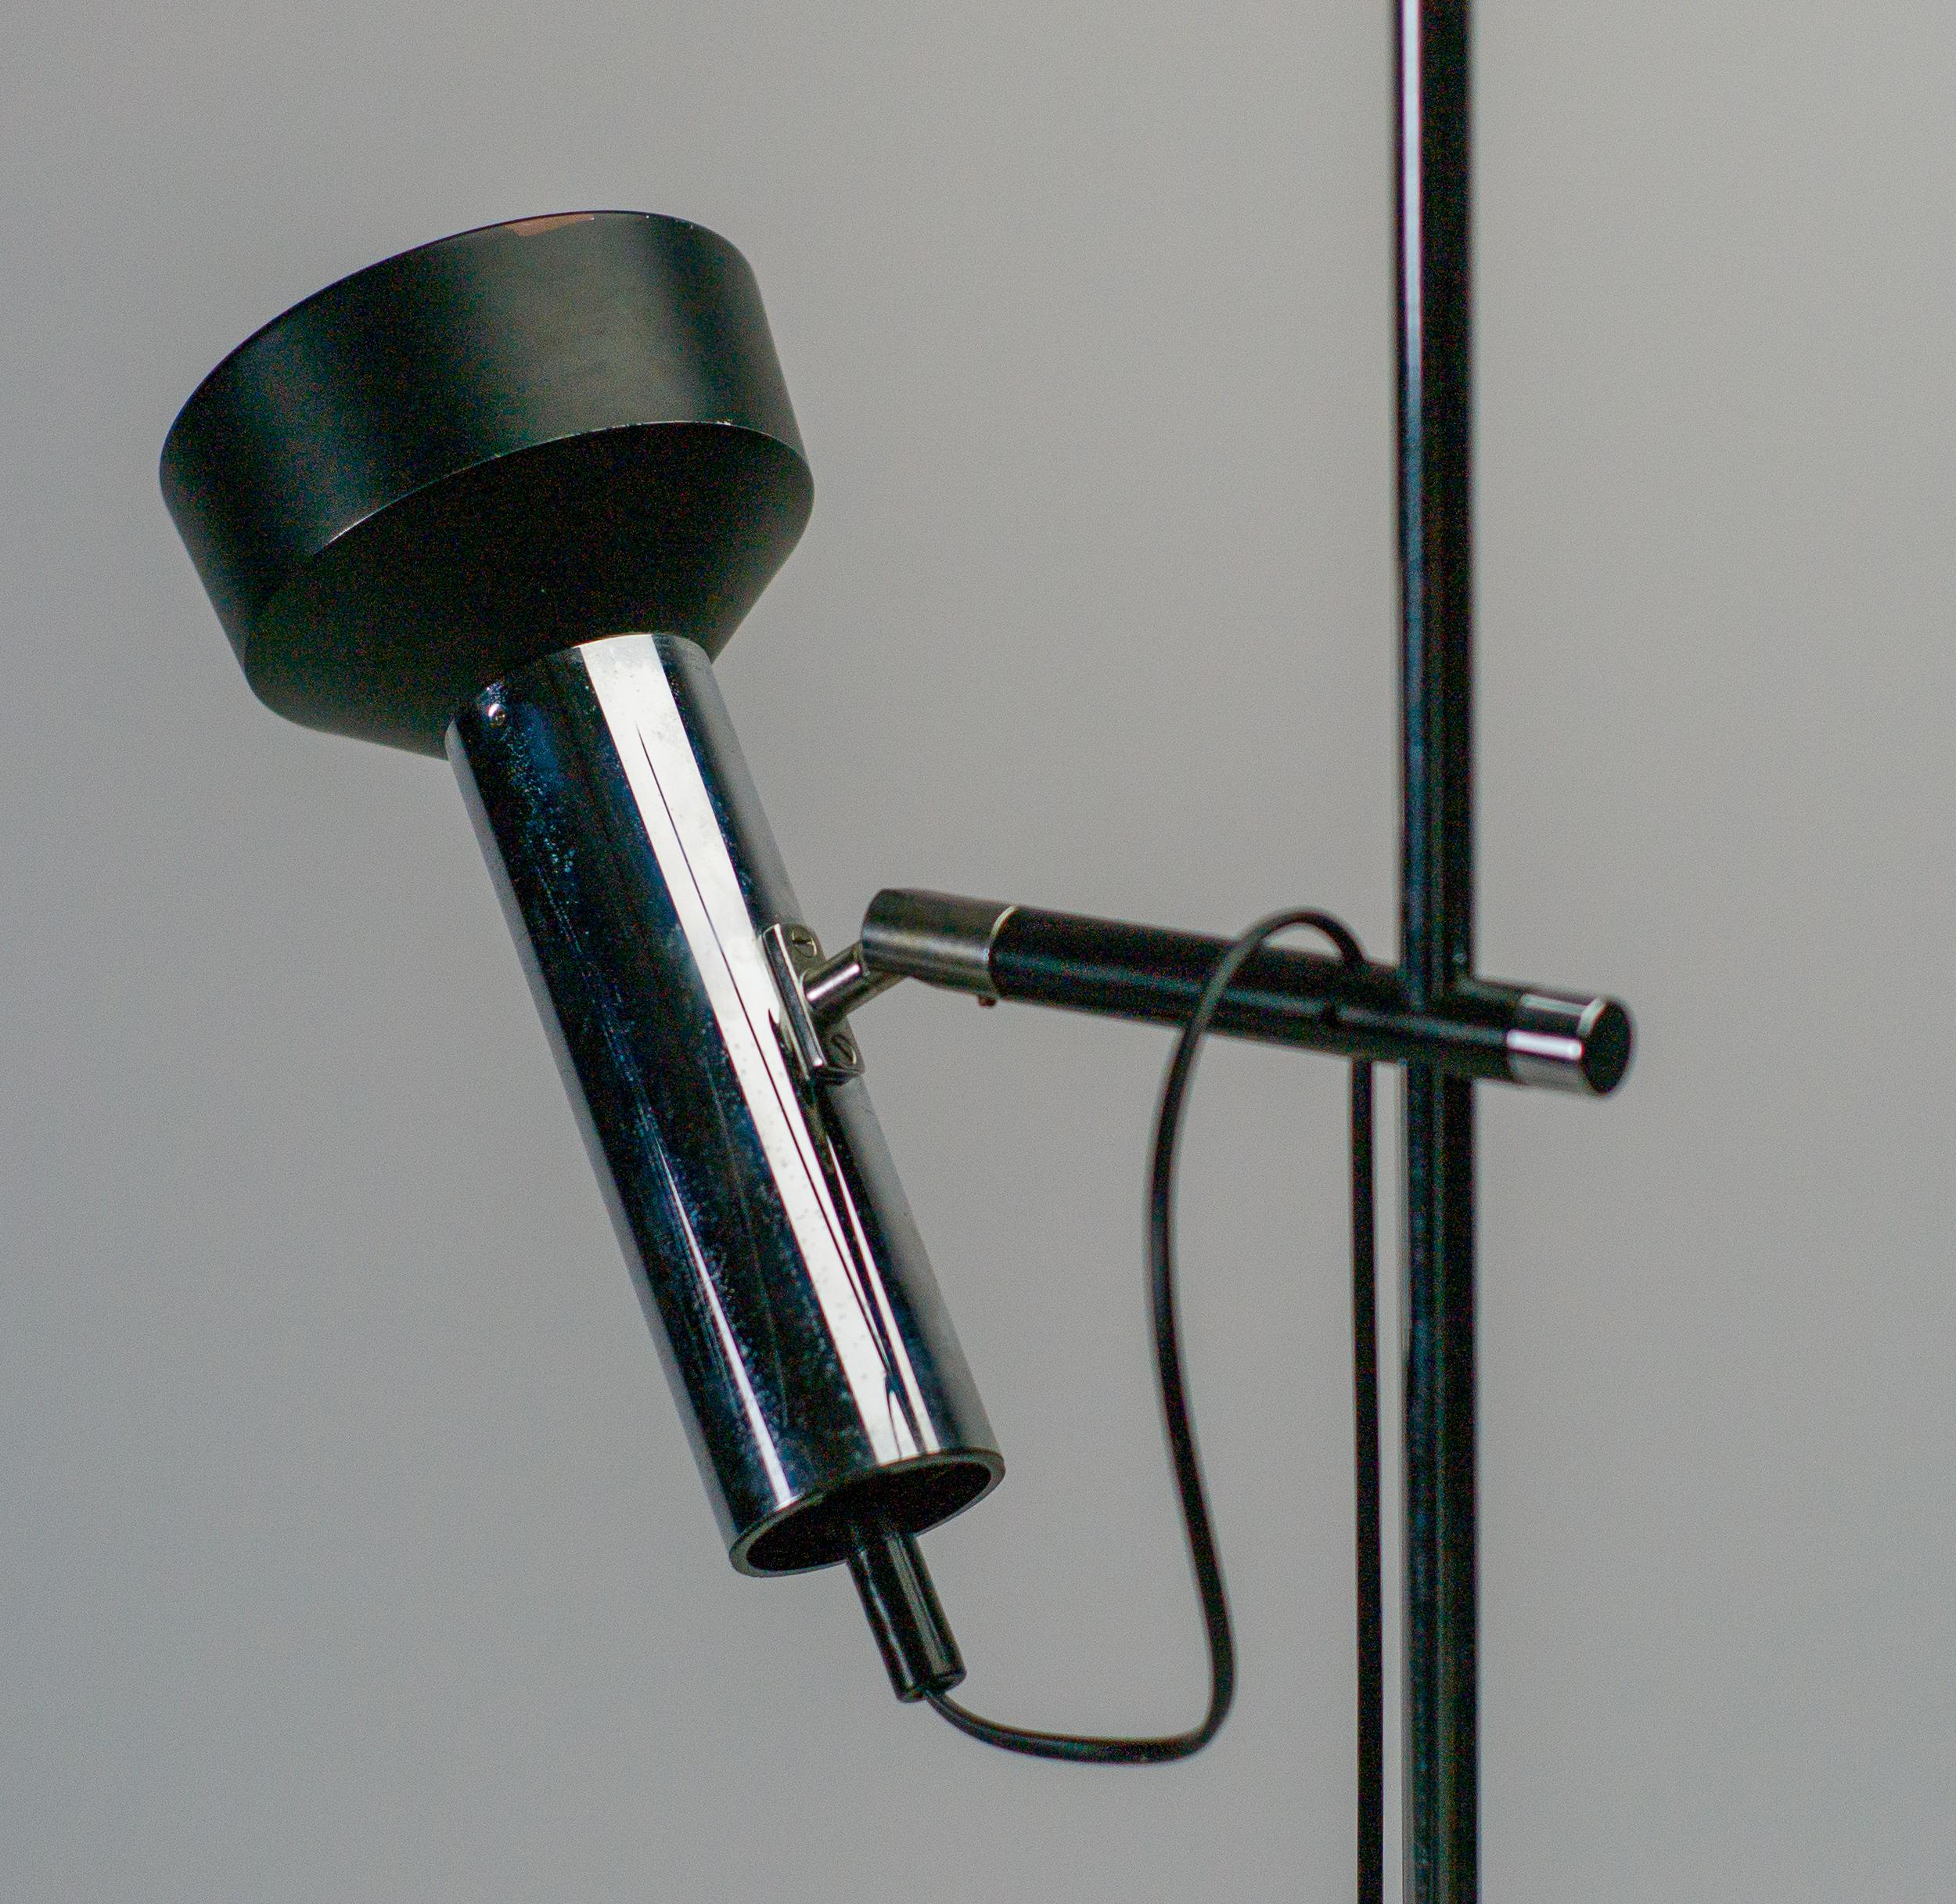 Fabriqué en 1965, ce lampadaire en acier chromé est constitué d'une base circulaire en métal émaillé noir et d'une tige en acier chromé. 
Elegant et raffiné, ce luminaire est doté d'une branche coulissante sur la tige principale munie d'une rotule